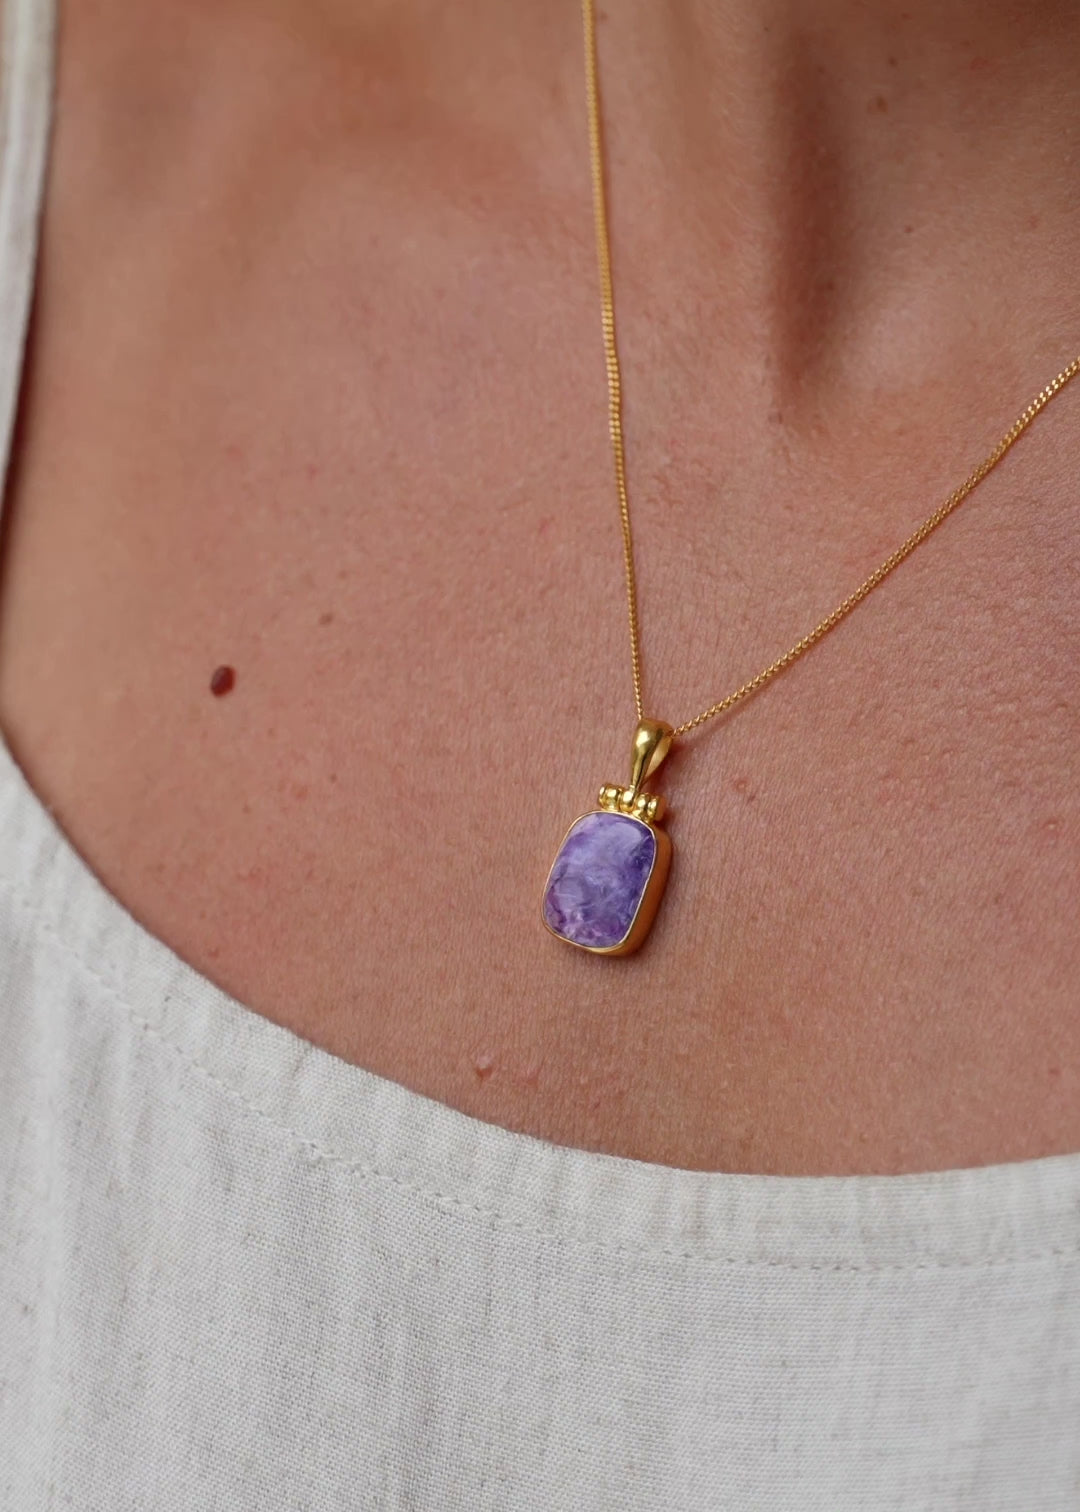 Kette mit Charoit Anhänger | Goldkette mit Lila Stein | Schmuck aus Bali | Handgemachter Schmuck online kaufen | Geschenk für Freundin finden | VERLAN Jewellery